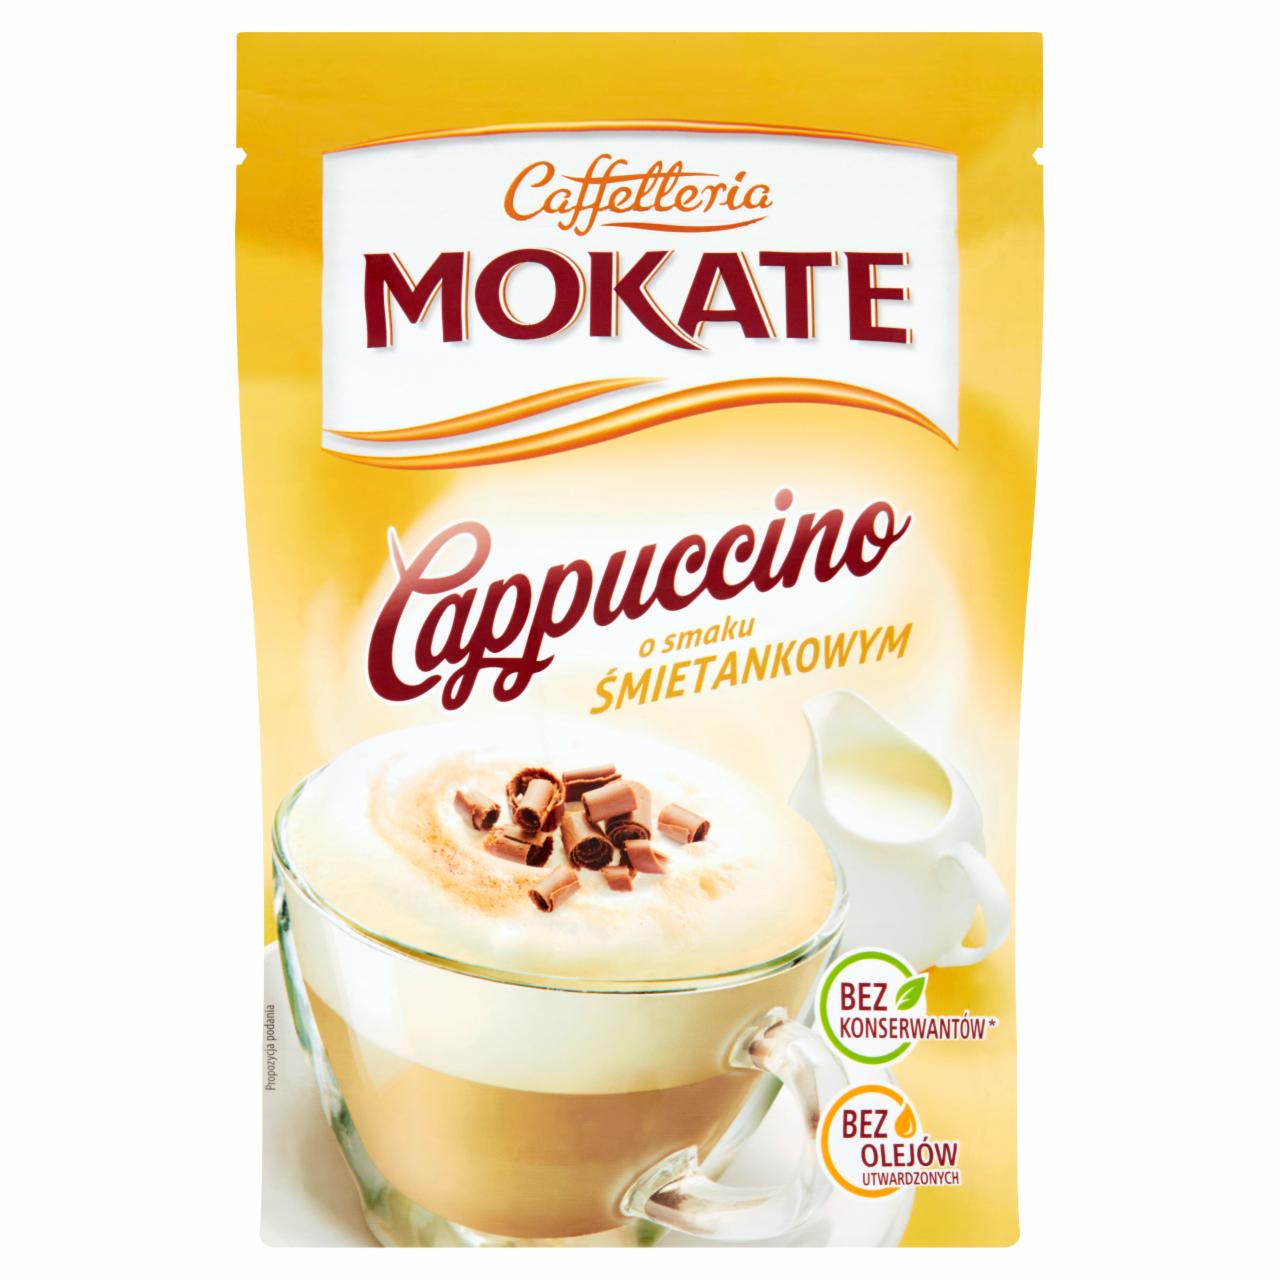 Zdjęcia - Mokate Cappuccino smak śmietankowy 110 g